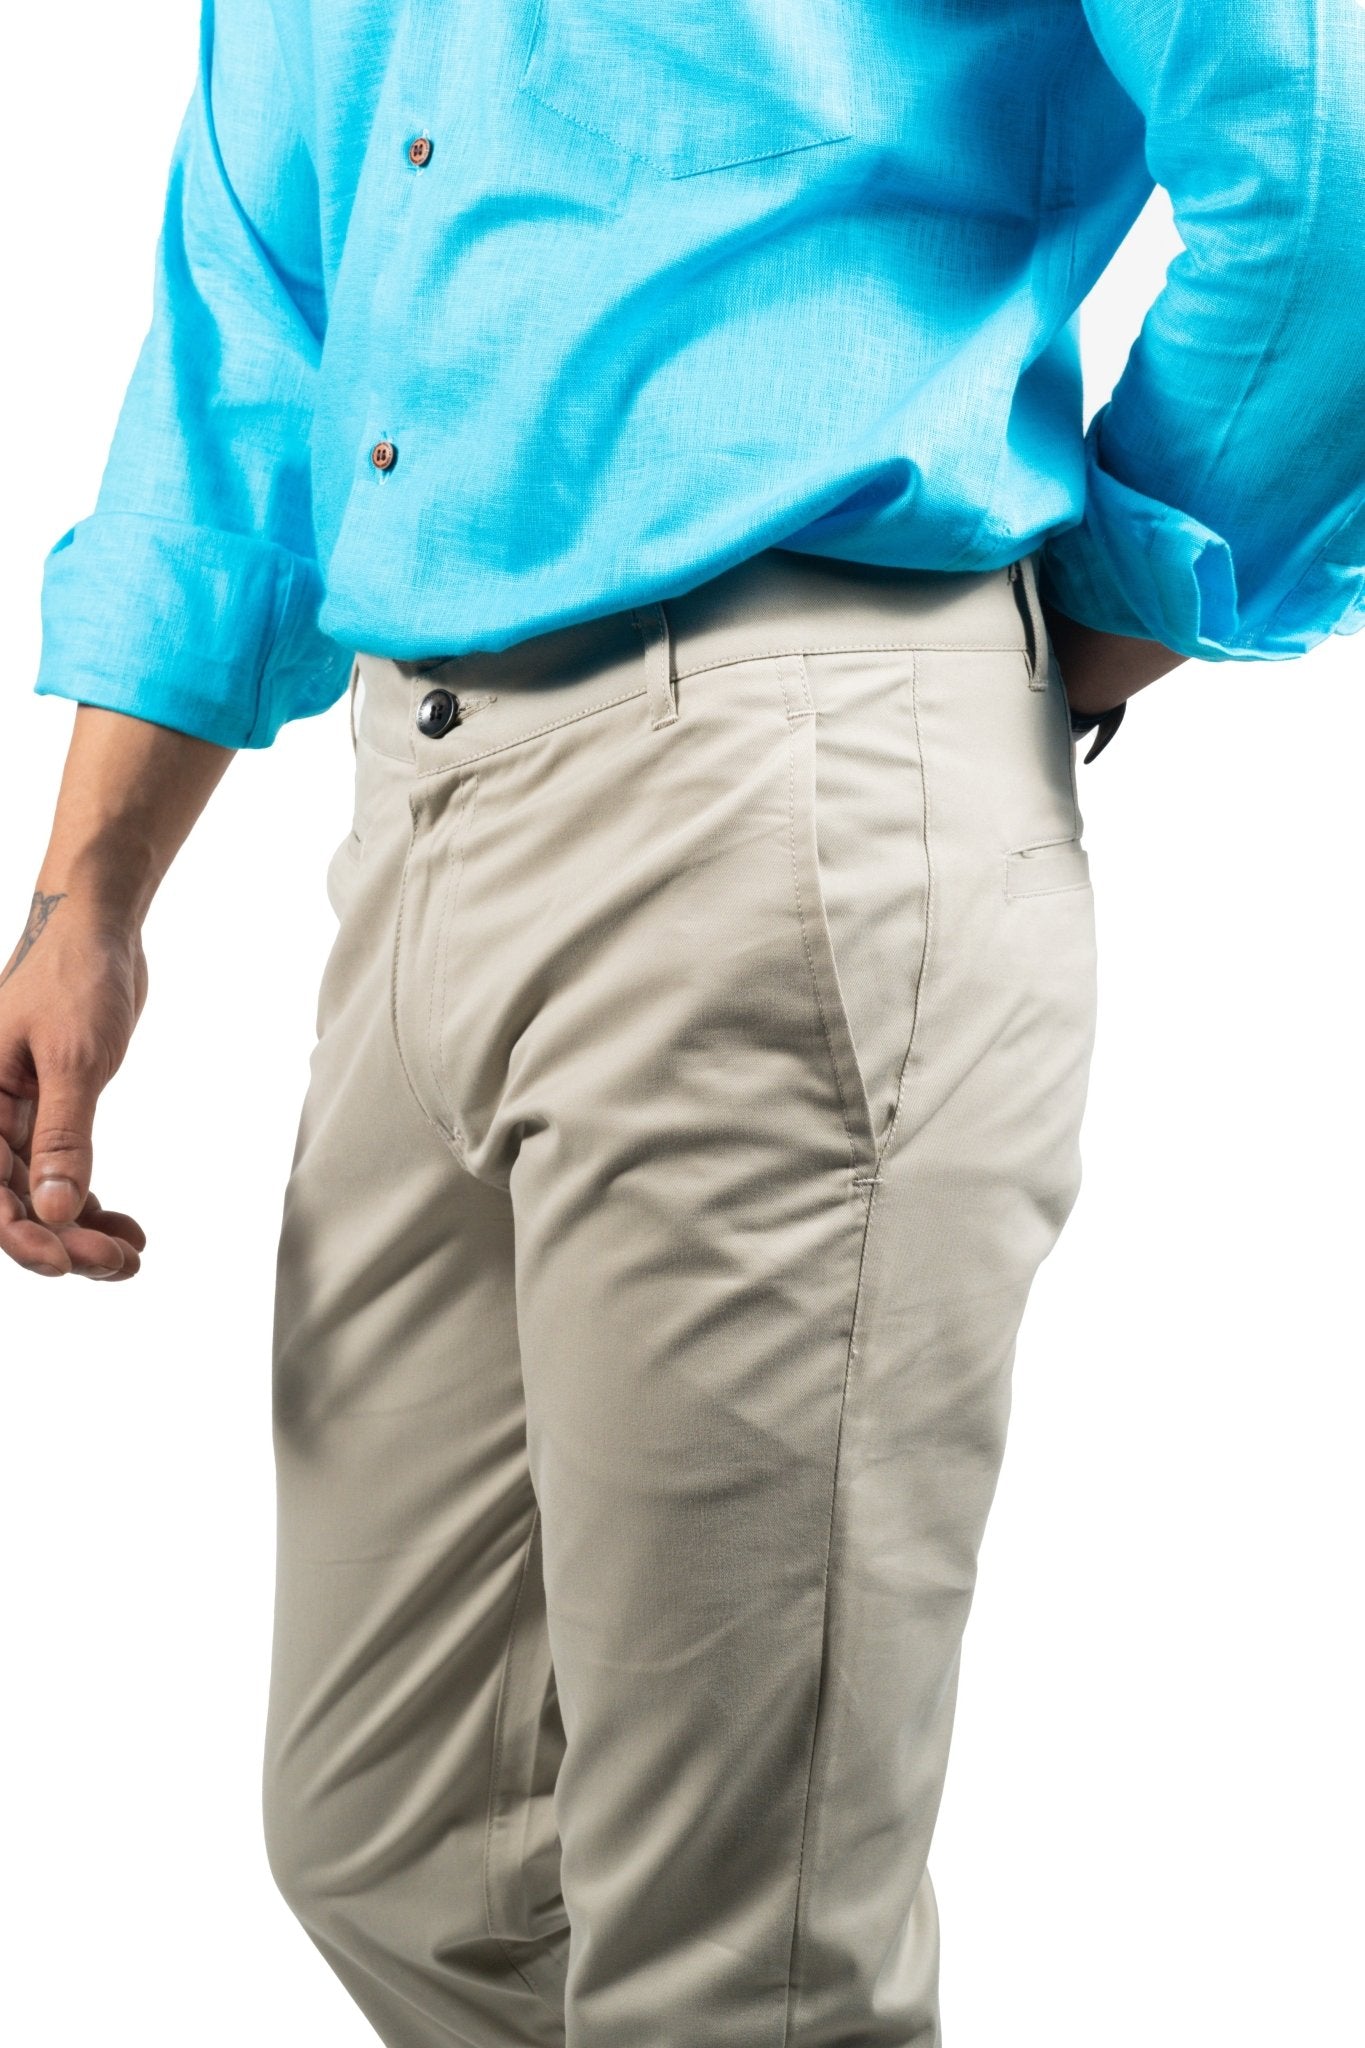 Off White Color Cotton Trouser Pants for Men - Punekar Cotton